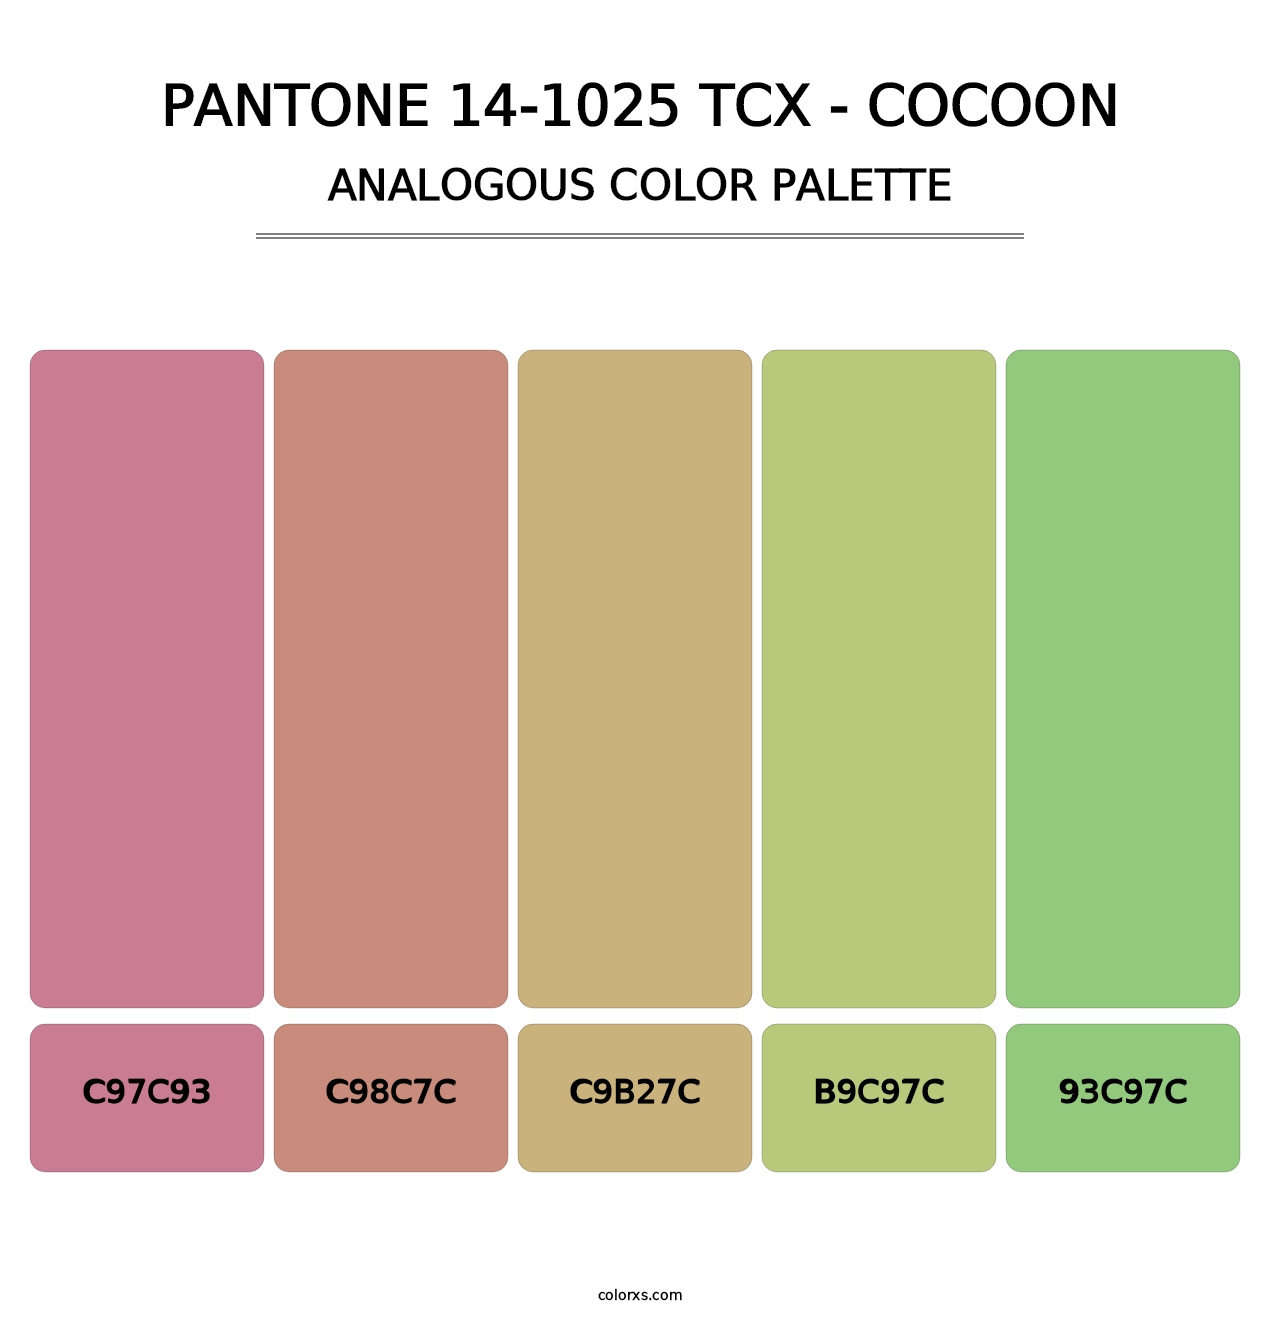 PANTONE 14-1025 TCX - Cocoon - Analogous Color Palette